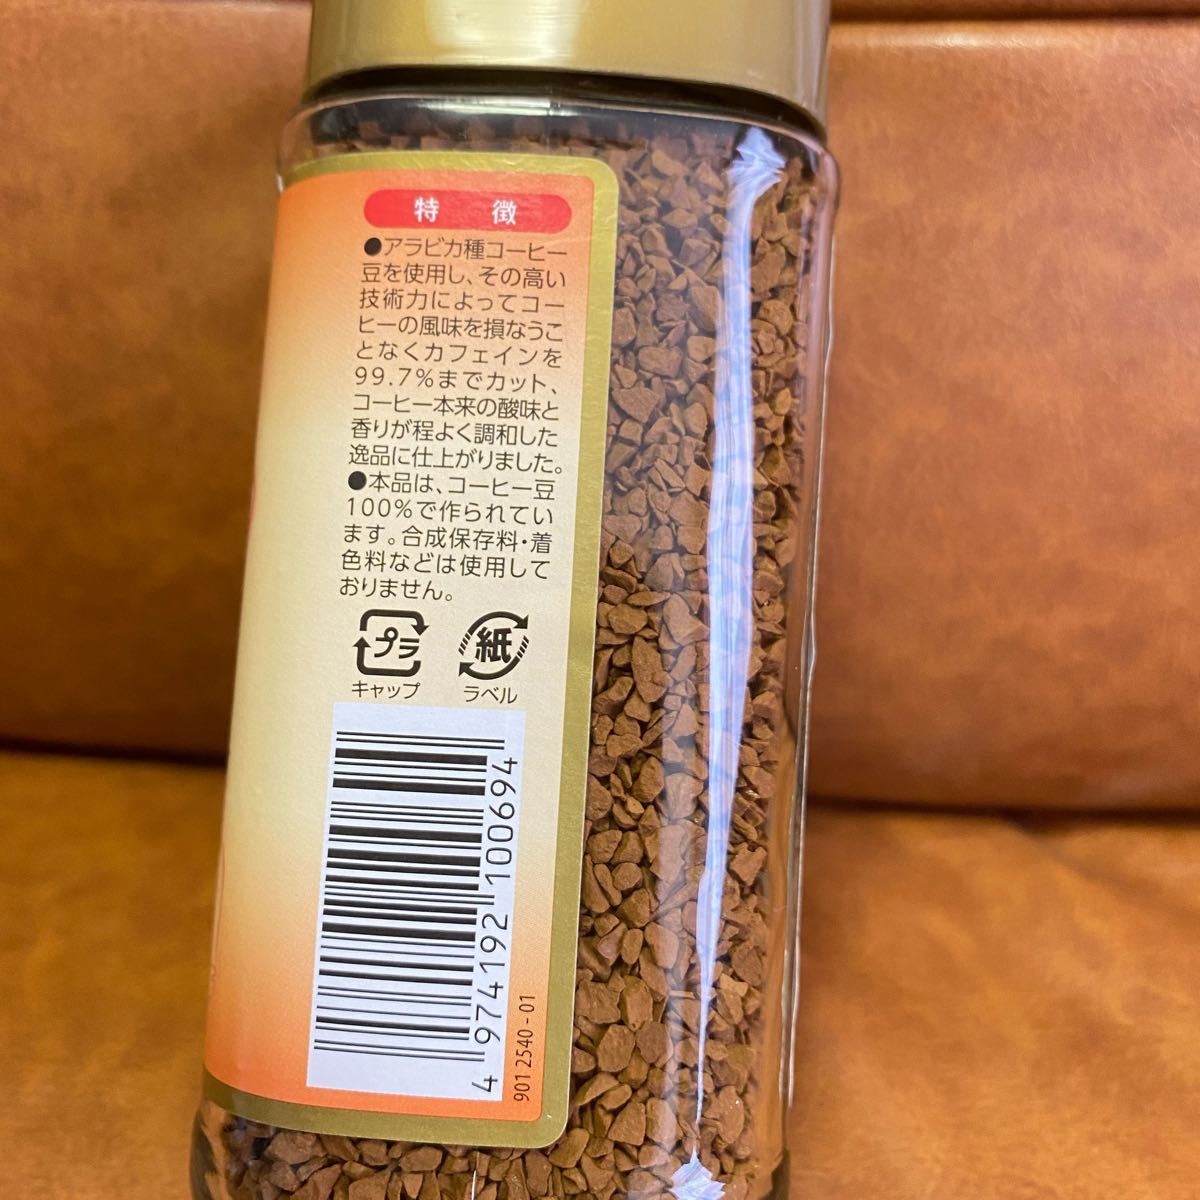 KREIS カフェイン99.7%までカットのおいしいコーヒー　2個セット　カフェインレス　ノンカフェイン　デカフェ　インスタント